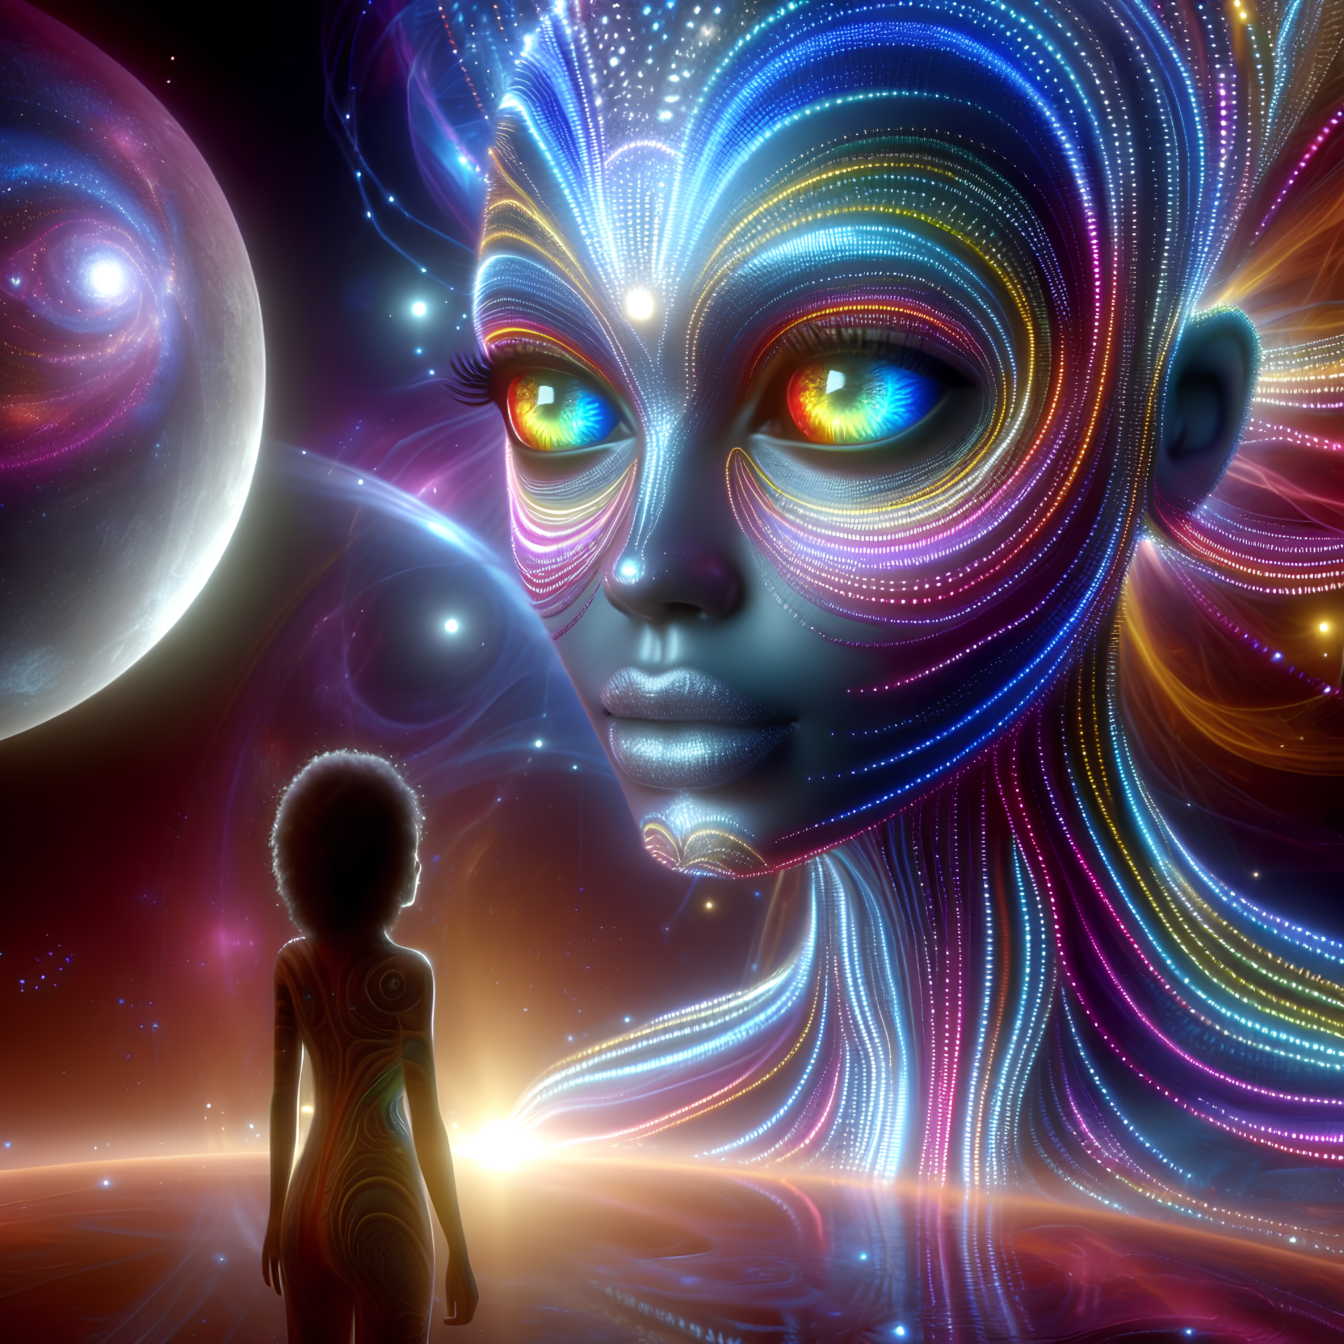 Spirituel overførsel af udenjordisk astrologisk energi i kosmos gennem kvantehelende hypnose